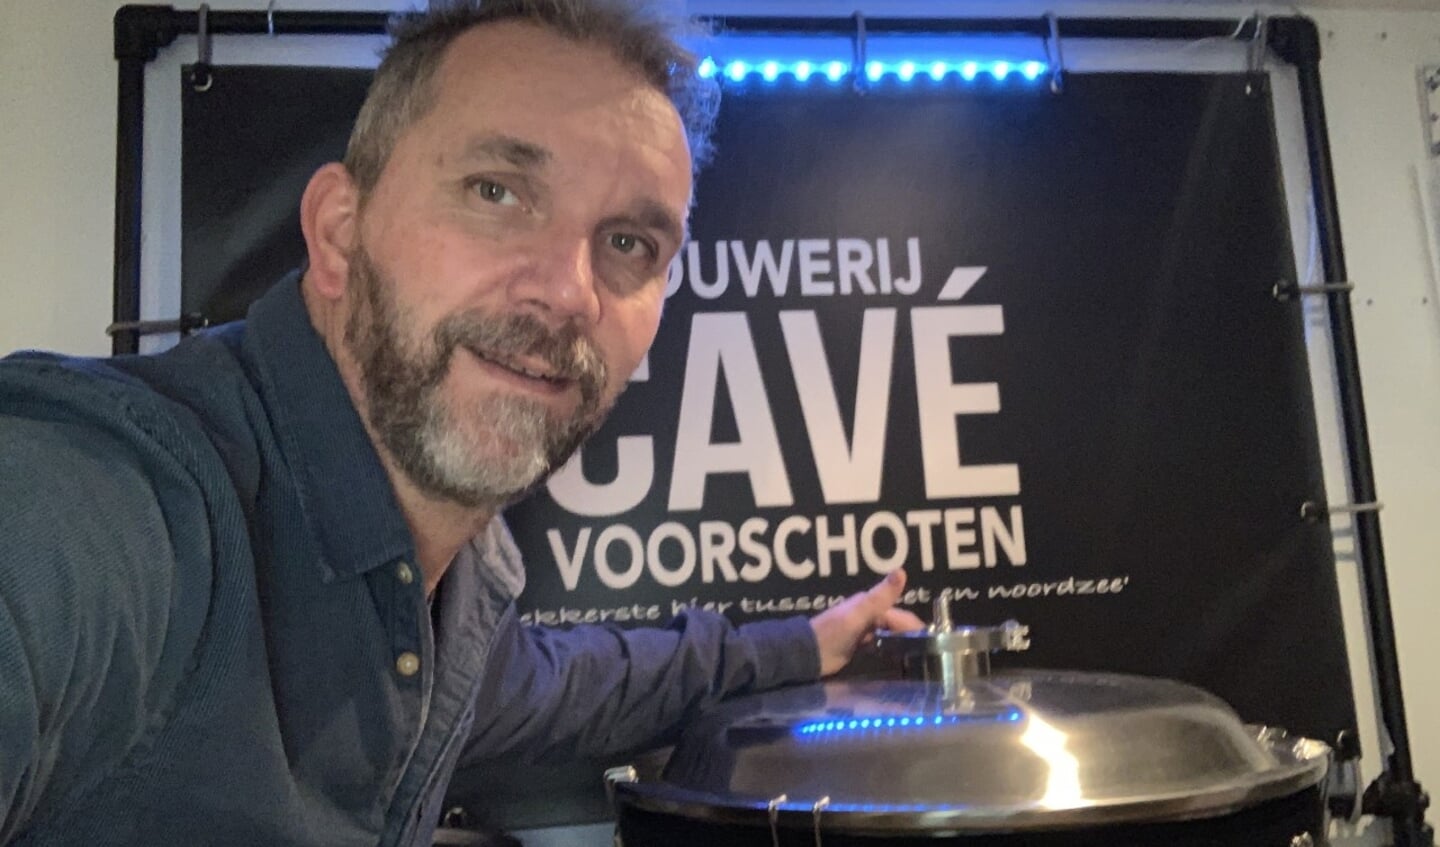 Antonio Cavé brouwt binnenkort gelimiteerde oplages speciaalbieren in zijn nieuwe en eigen nano-brouwerij in Voorschoten. Foto: PR